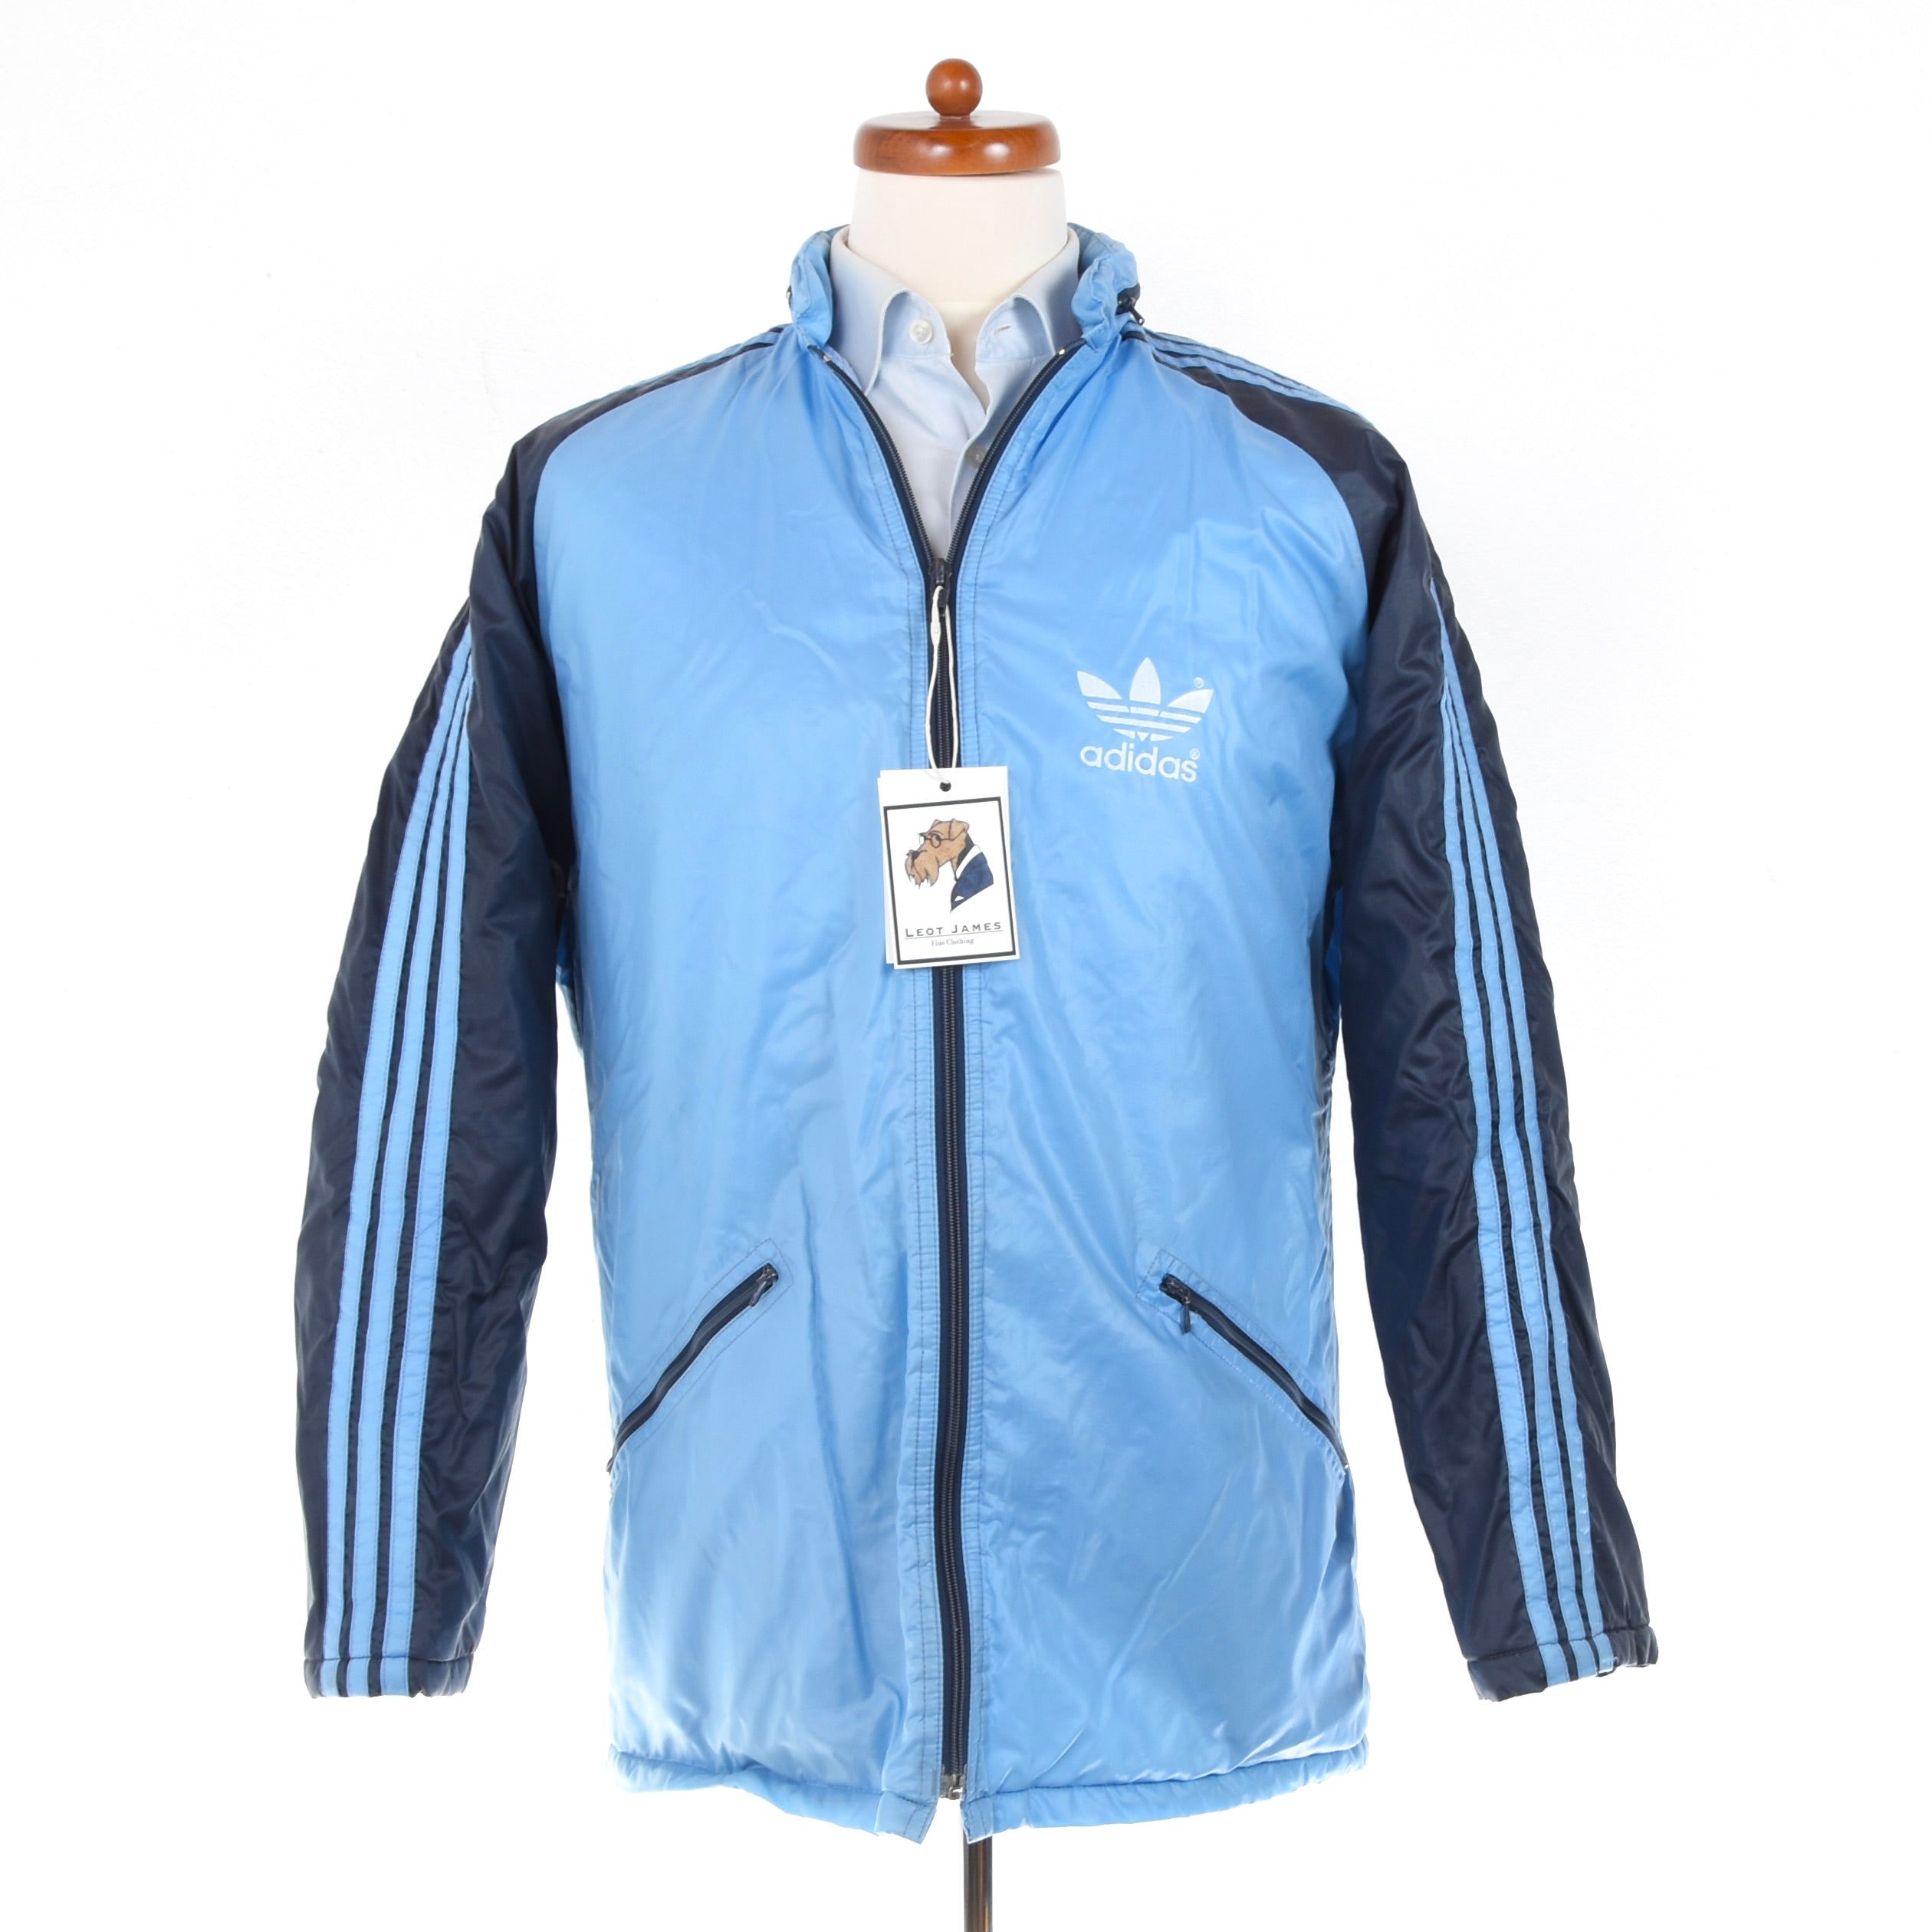 Vintage Adidas Nylon Jacket - Navy & Sky Blue – Leot James